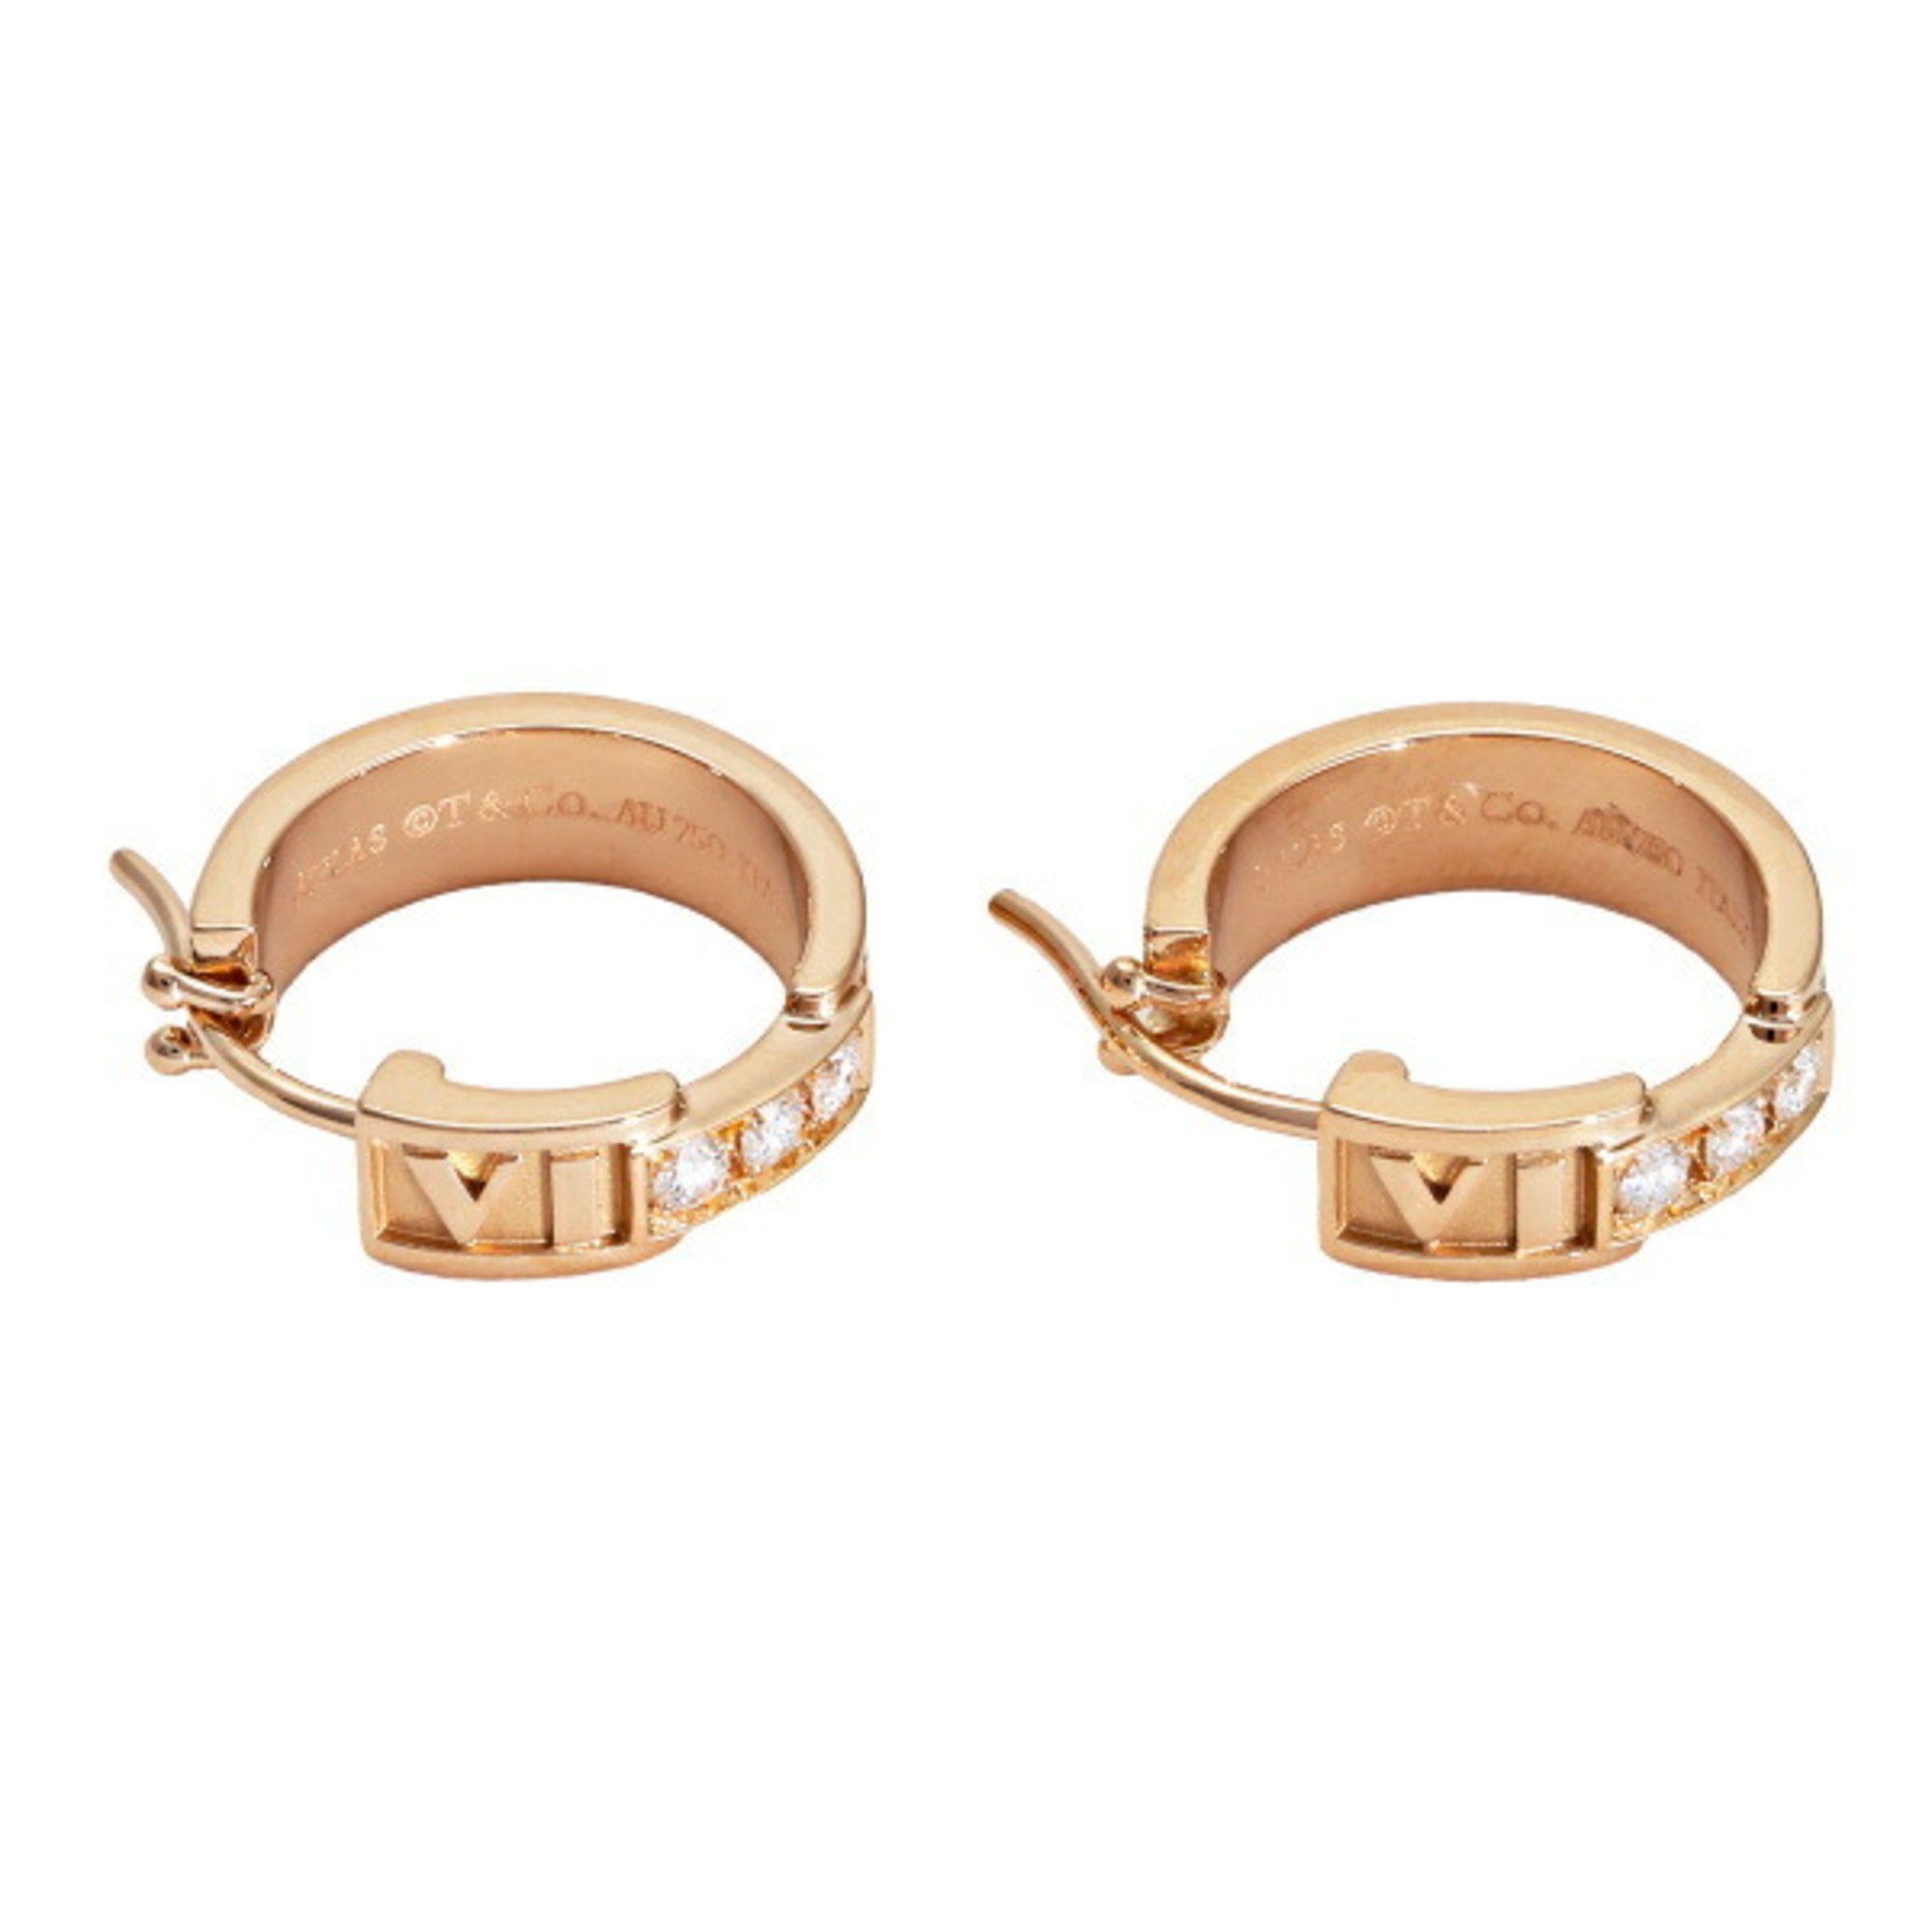 Tiffany Atlas K18PG pink gold earrings